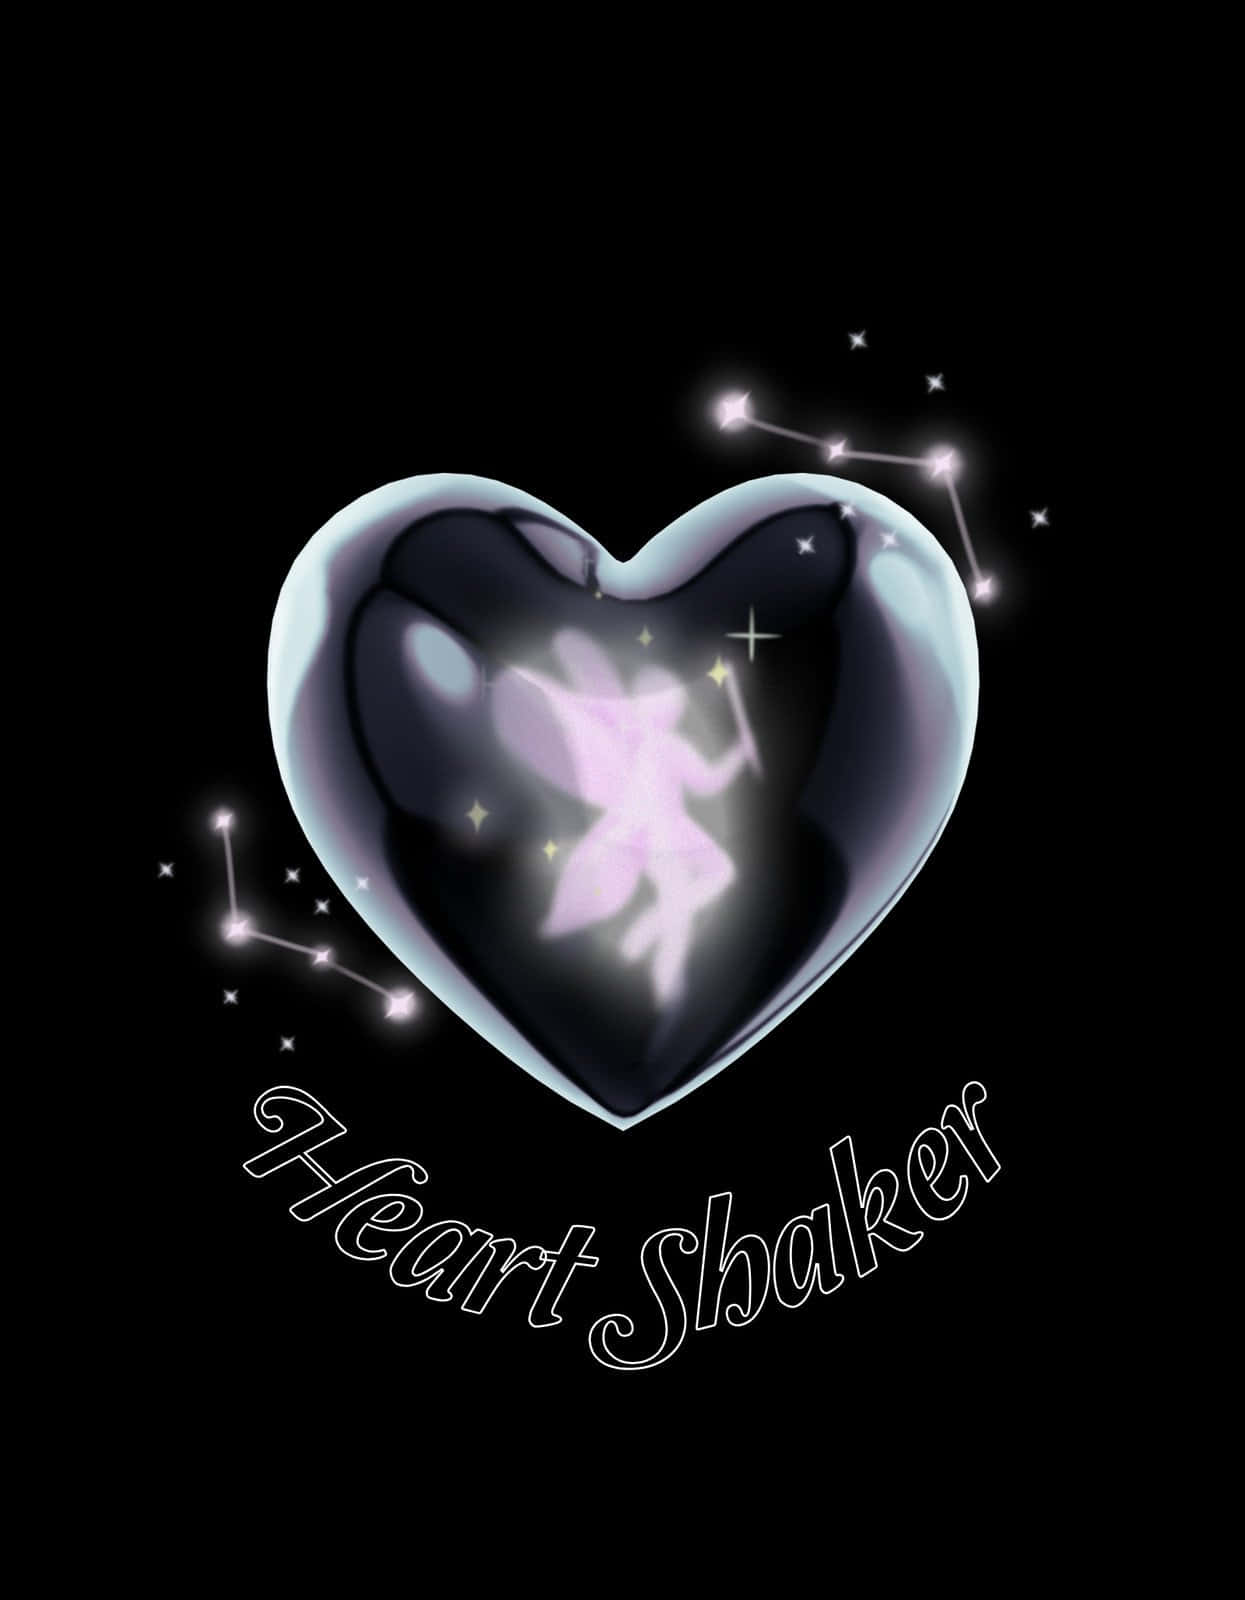 Glowing Heart Shaker Art Wallpaper